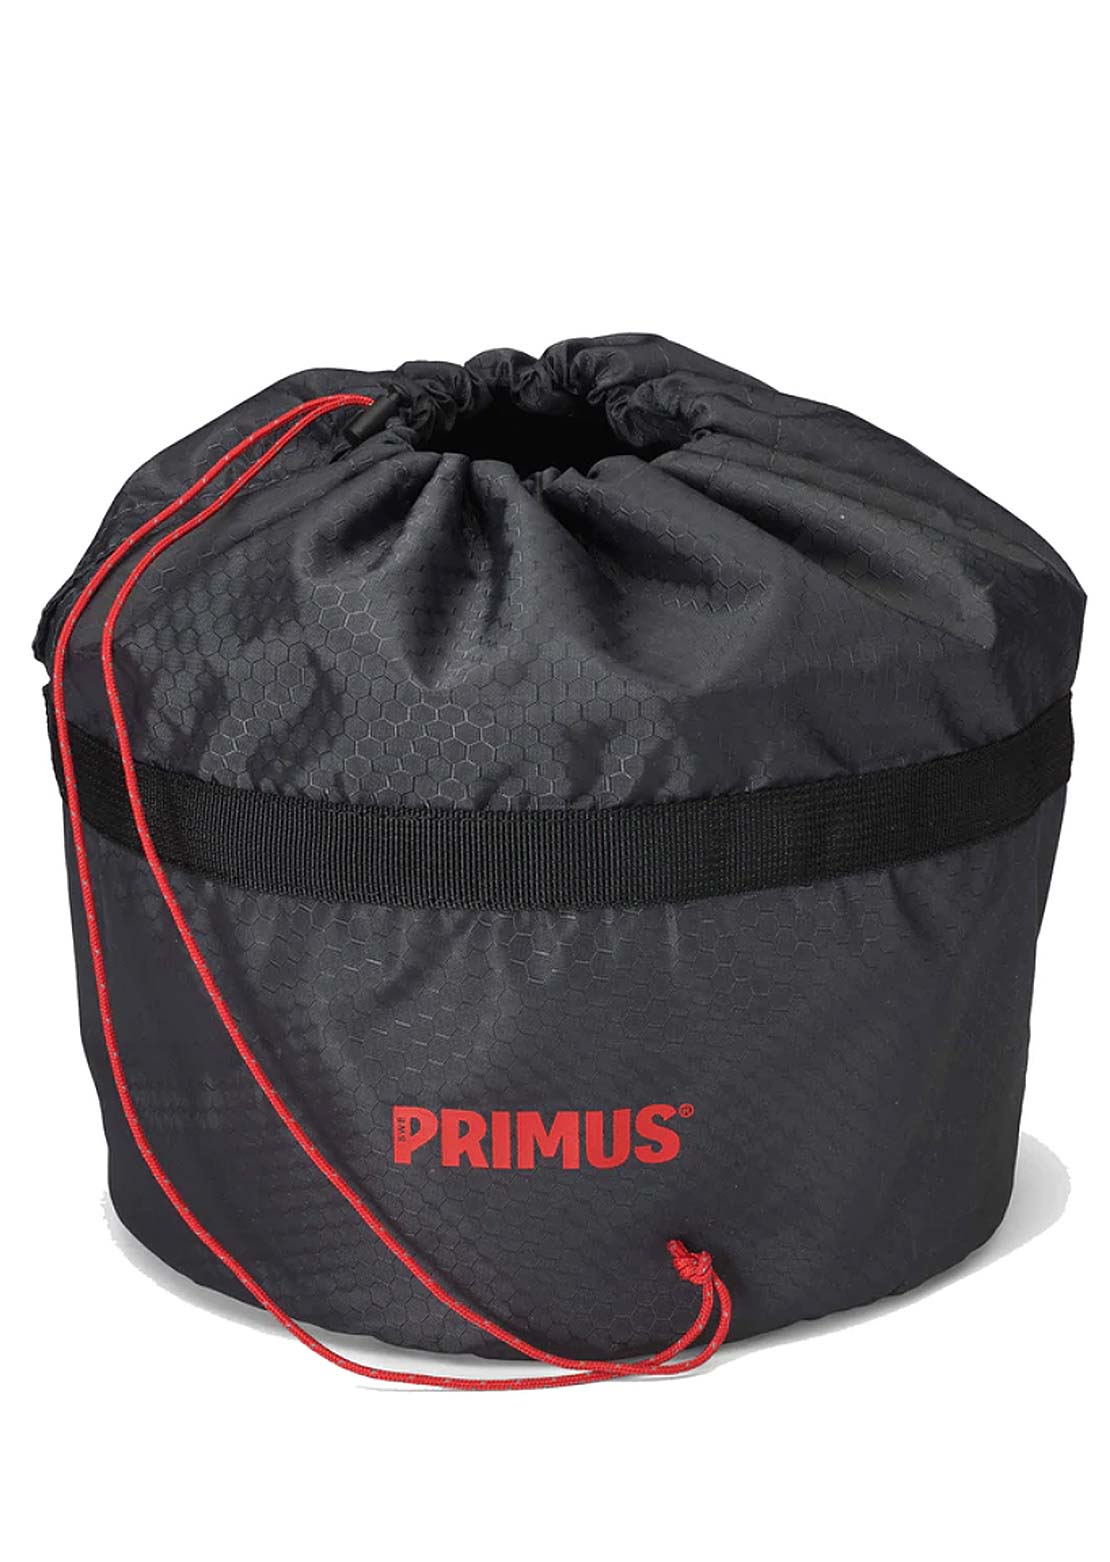 Primus Primetech 1.3L Stove System